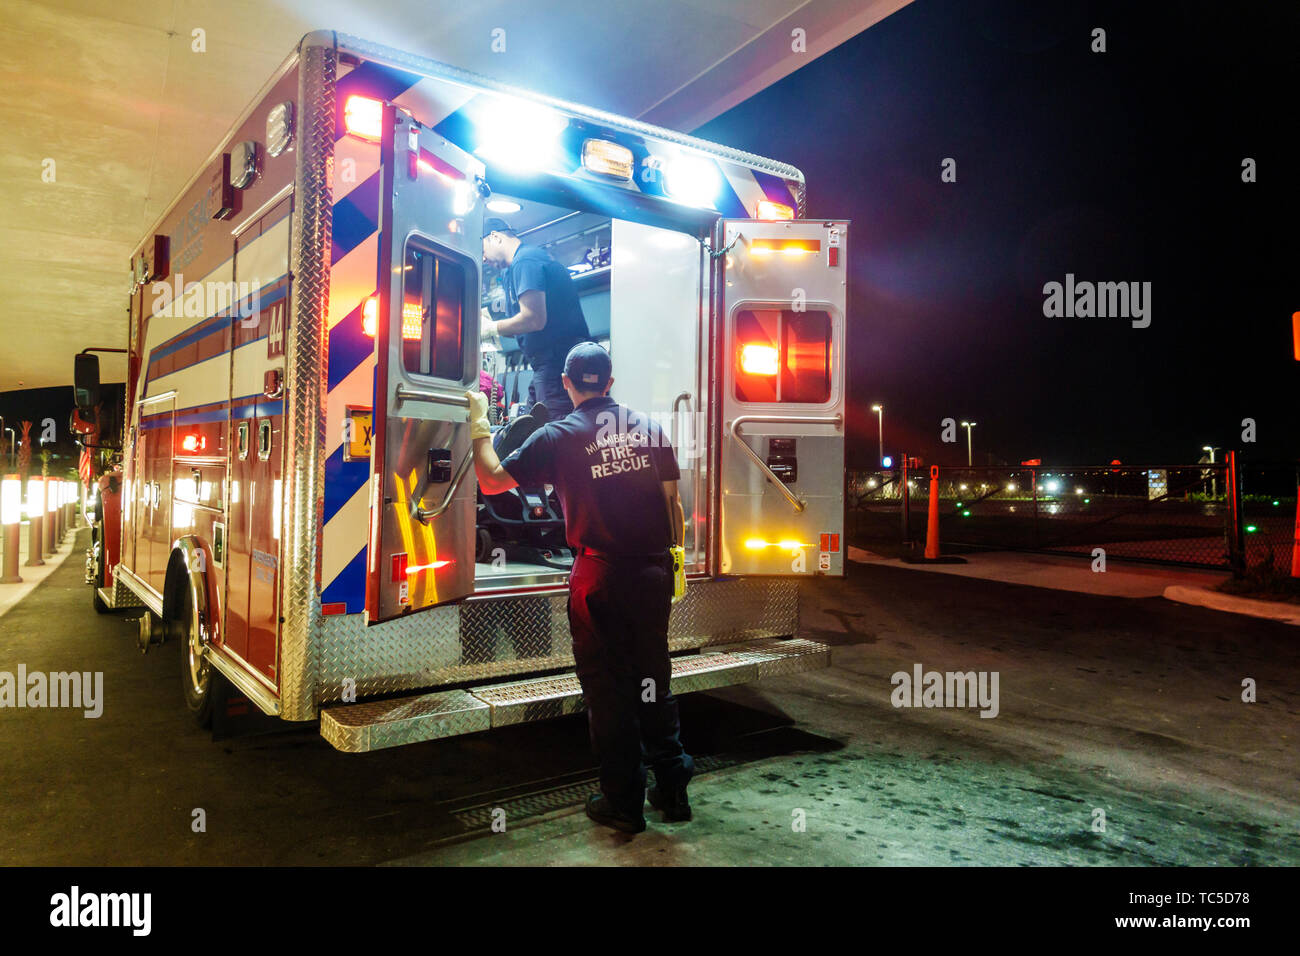 Miami Beach Florida, Mount Mt. Centre médical de Sinai hôpital, secours d'incendie urgence médicale urgence véhicule ambulance, EMT, FL190331018 Banque D'Images